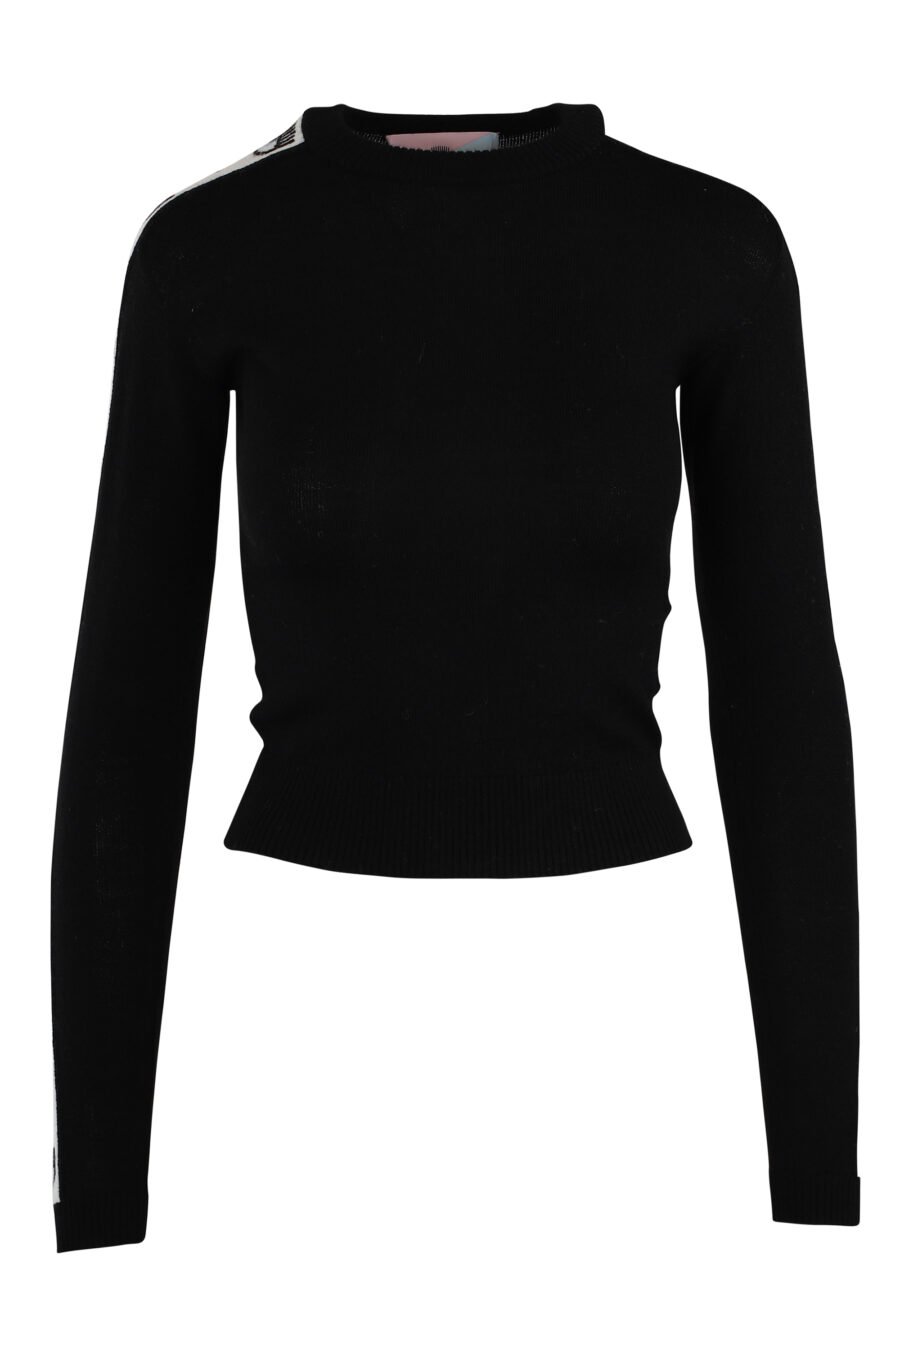 Jersey negro con logo en cinta mangas - IMG 5540